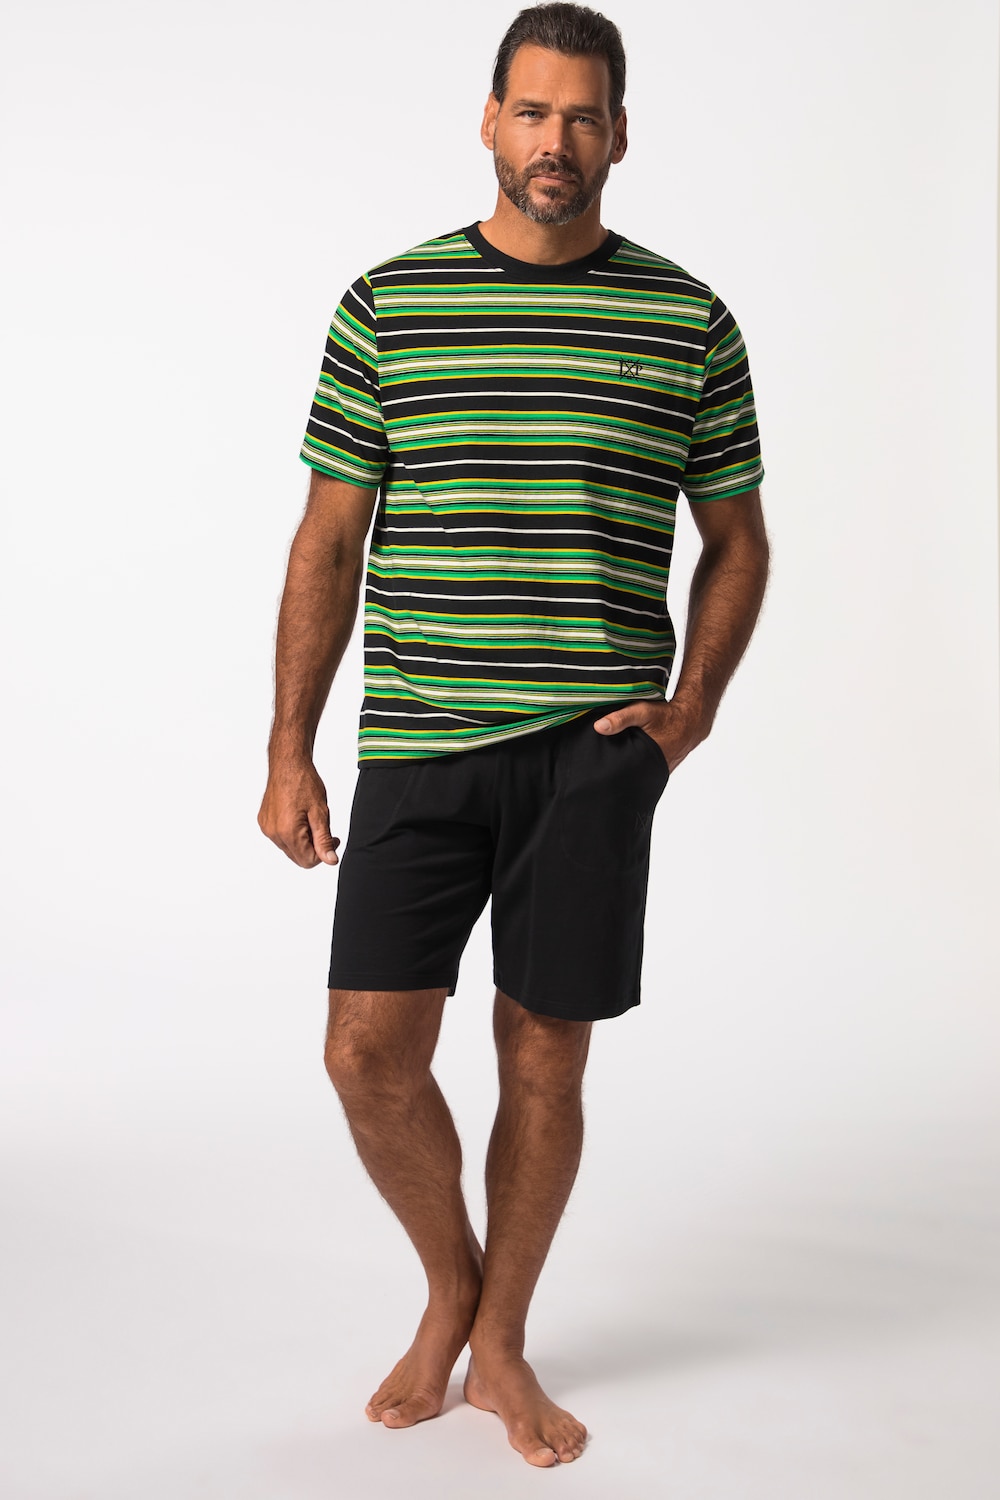 JP1880 Schlafanzug, Homewear, kurzer Zweiteiler, geringeltes T-Shirt, Shorts, bis 8 XL